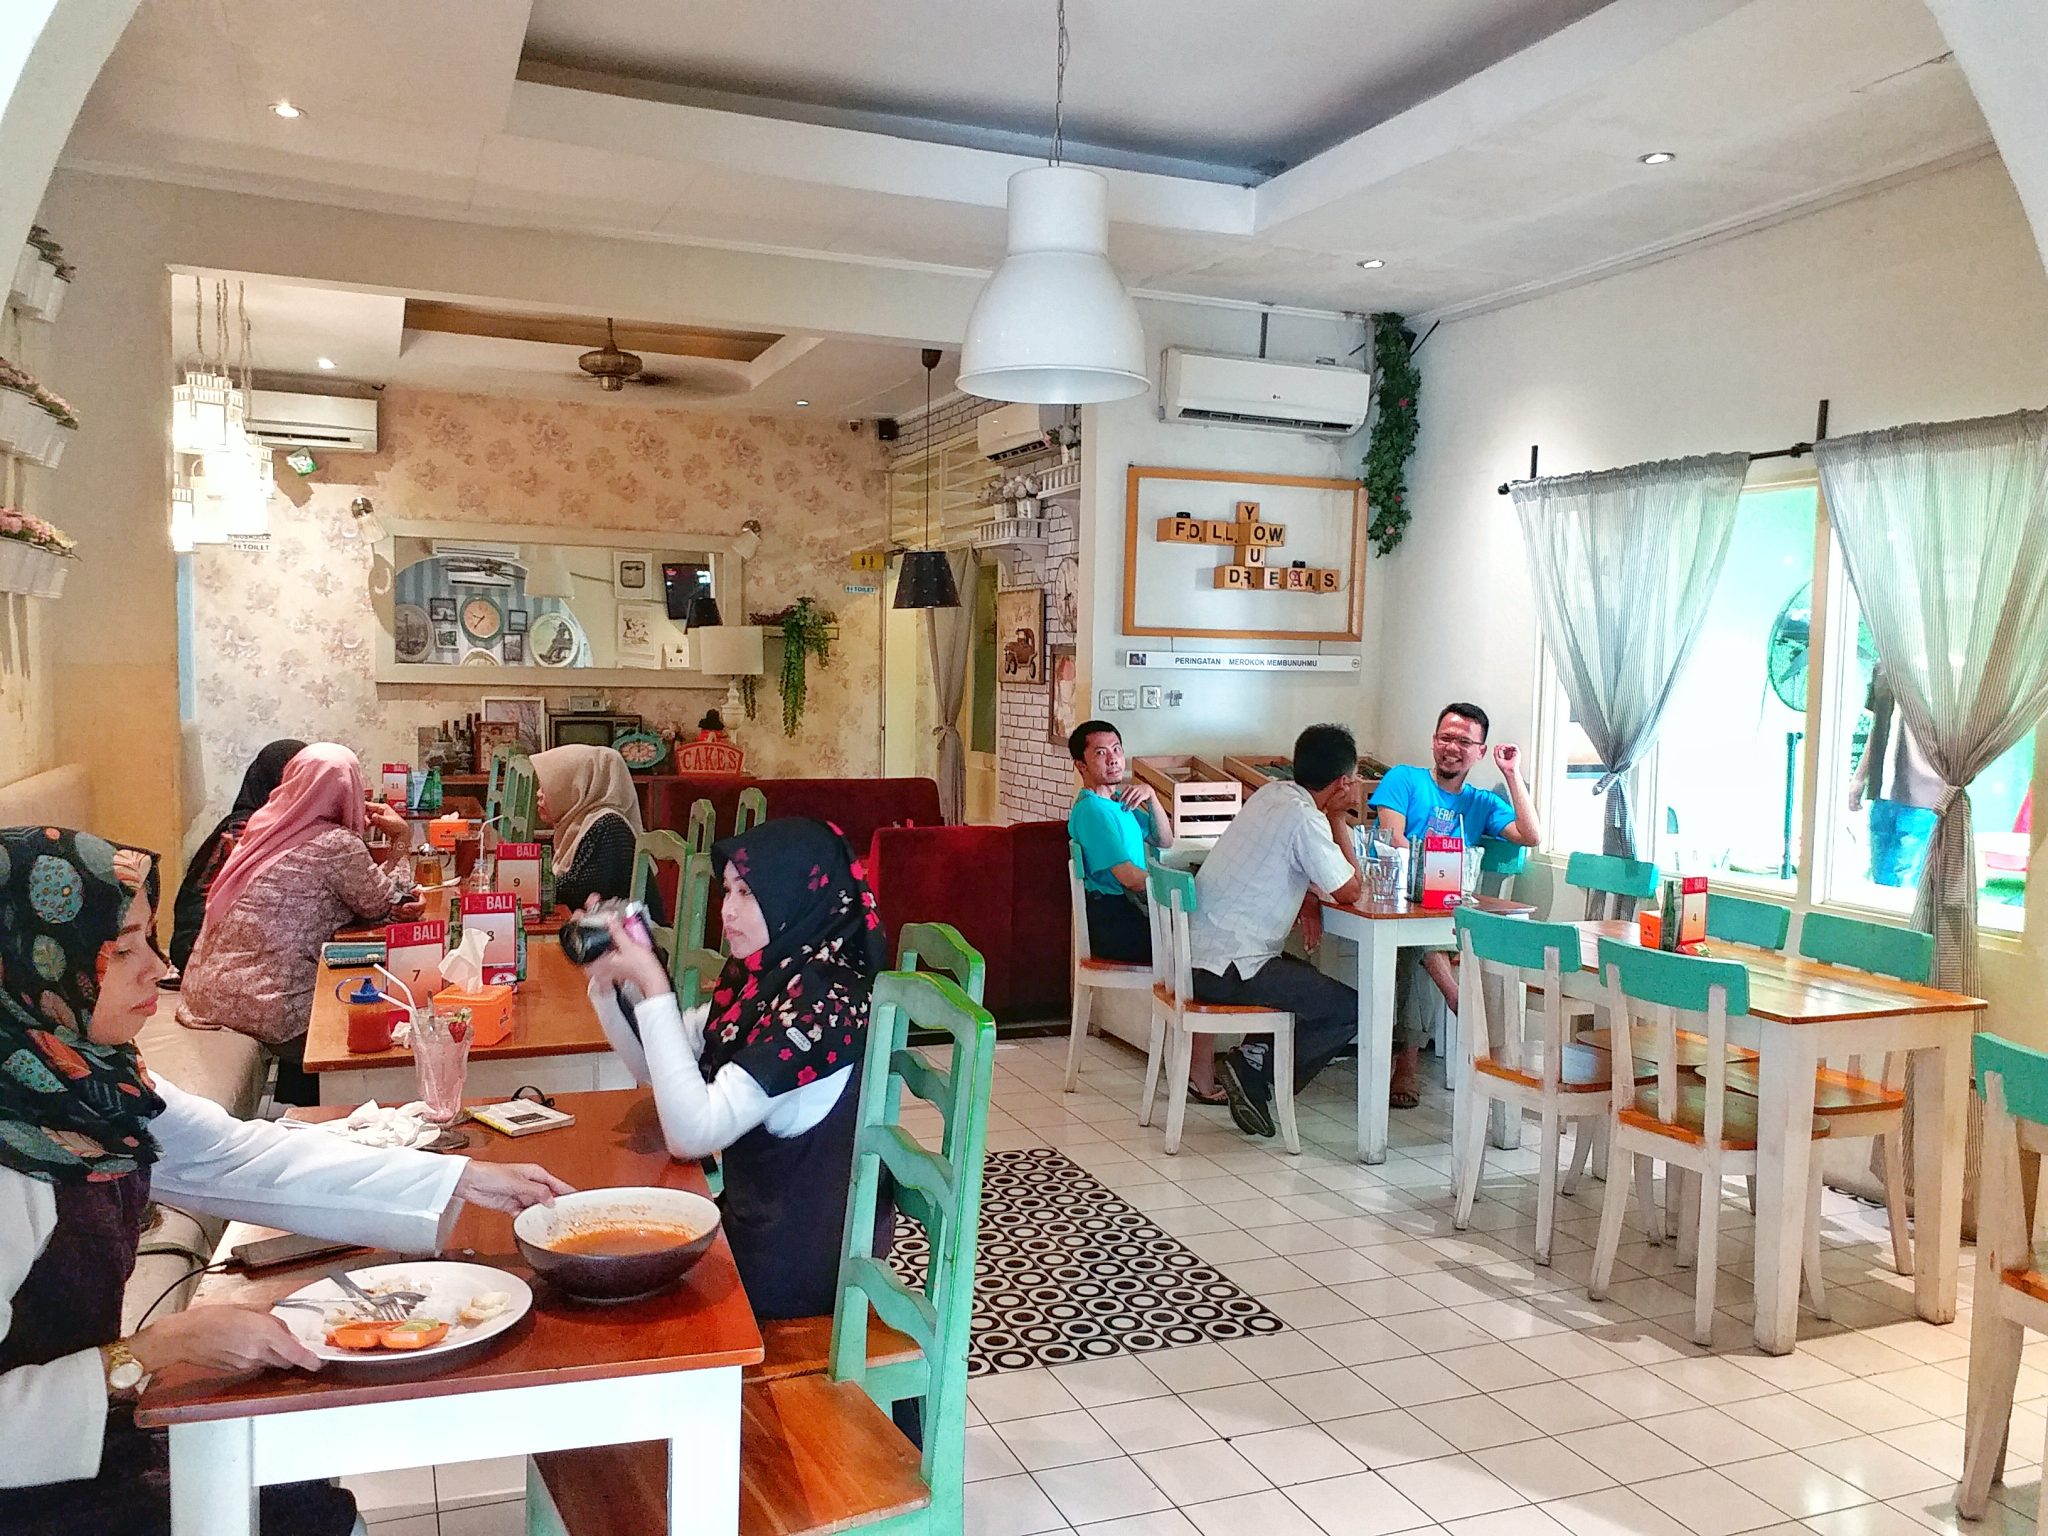 12 Cafe  di  Jakarta  Timur  Yang Keren dan Instagramable 